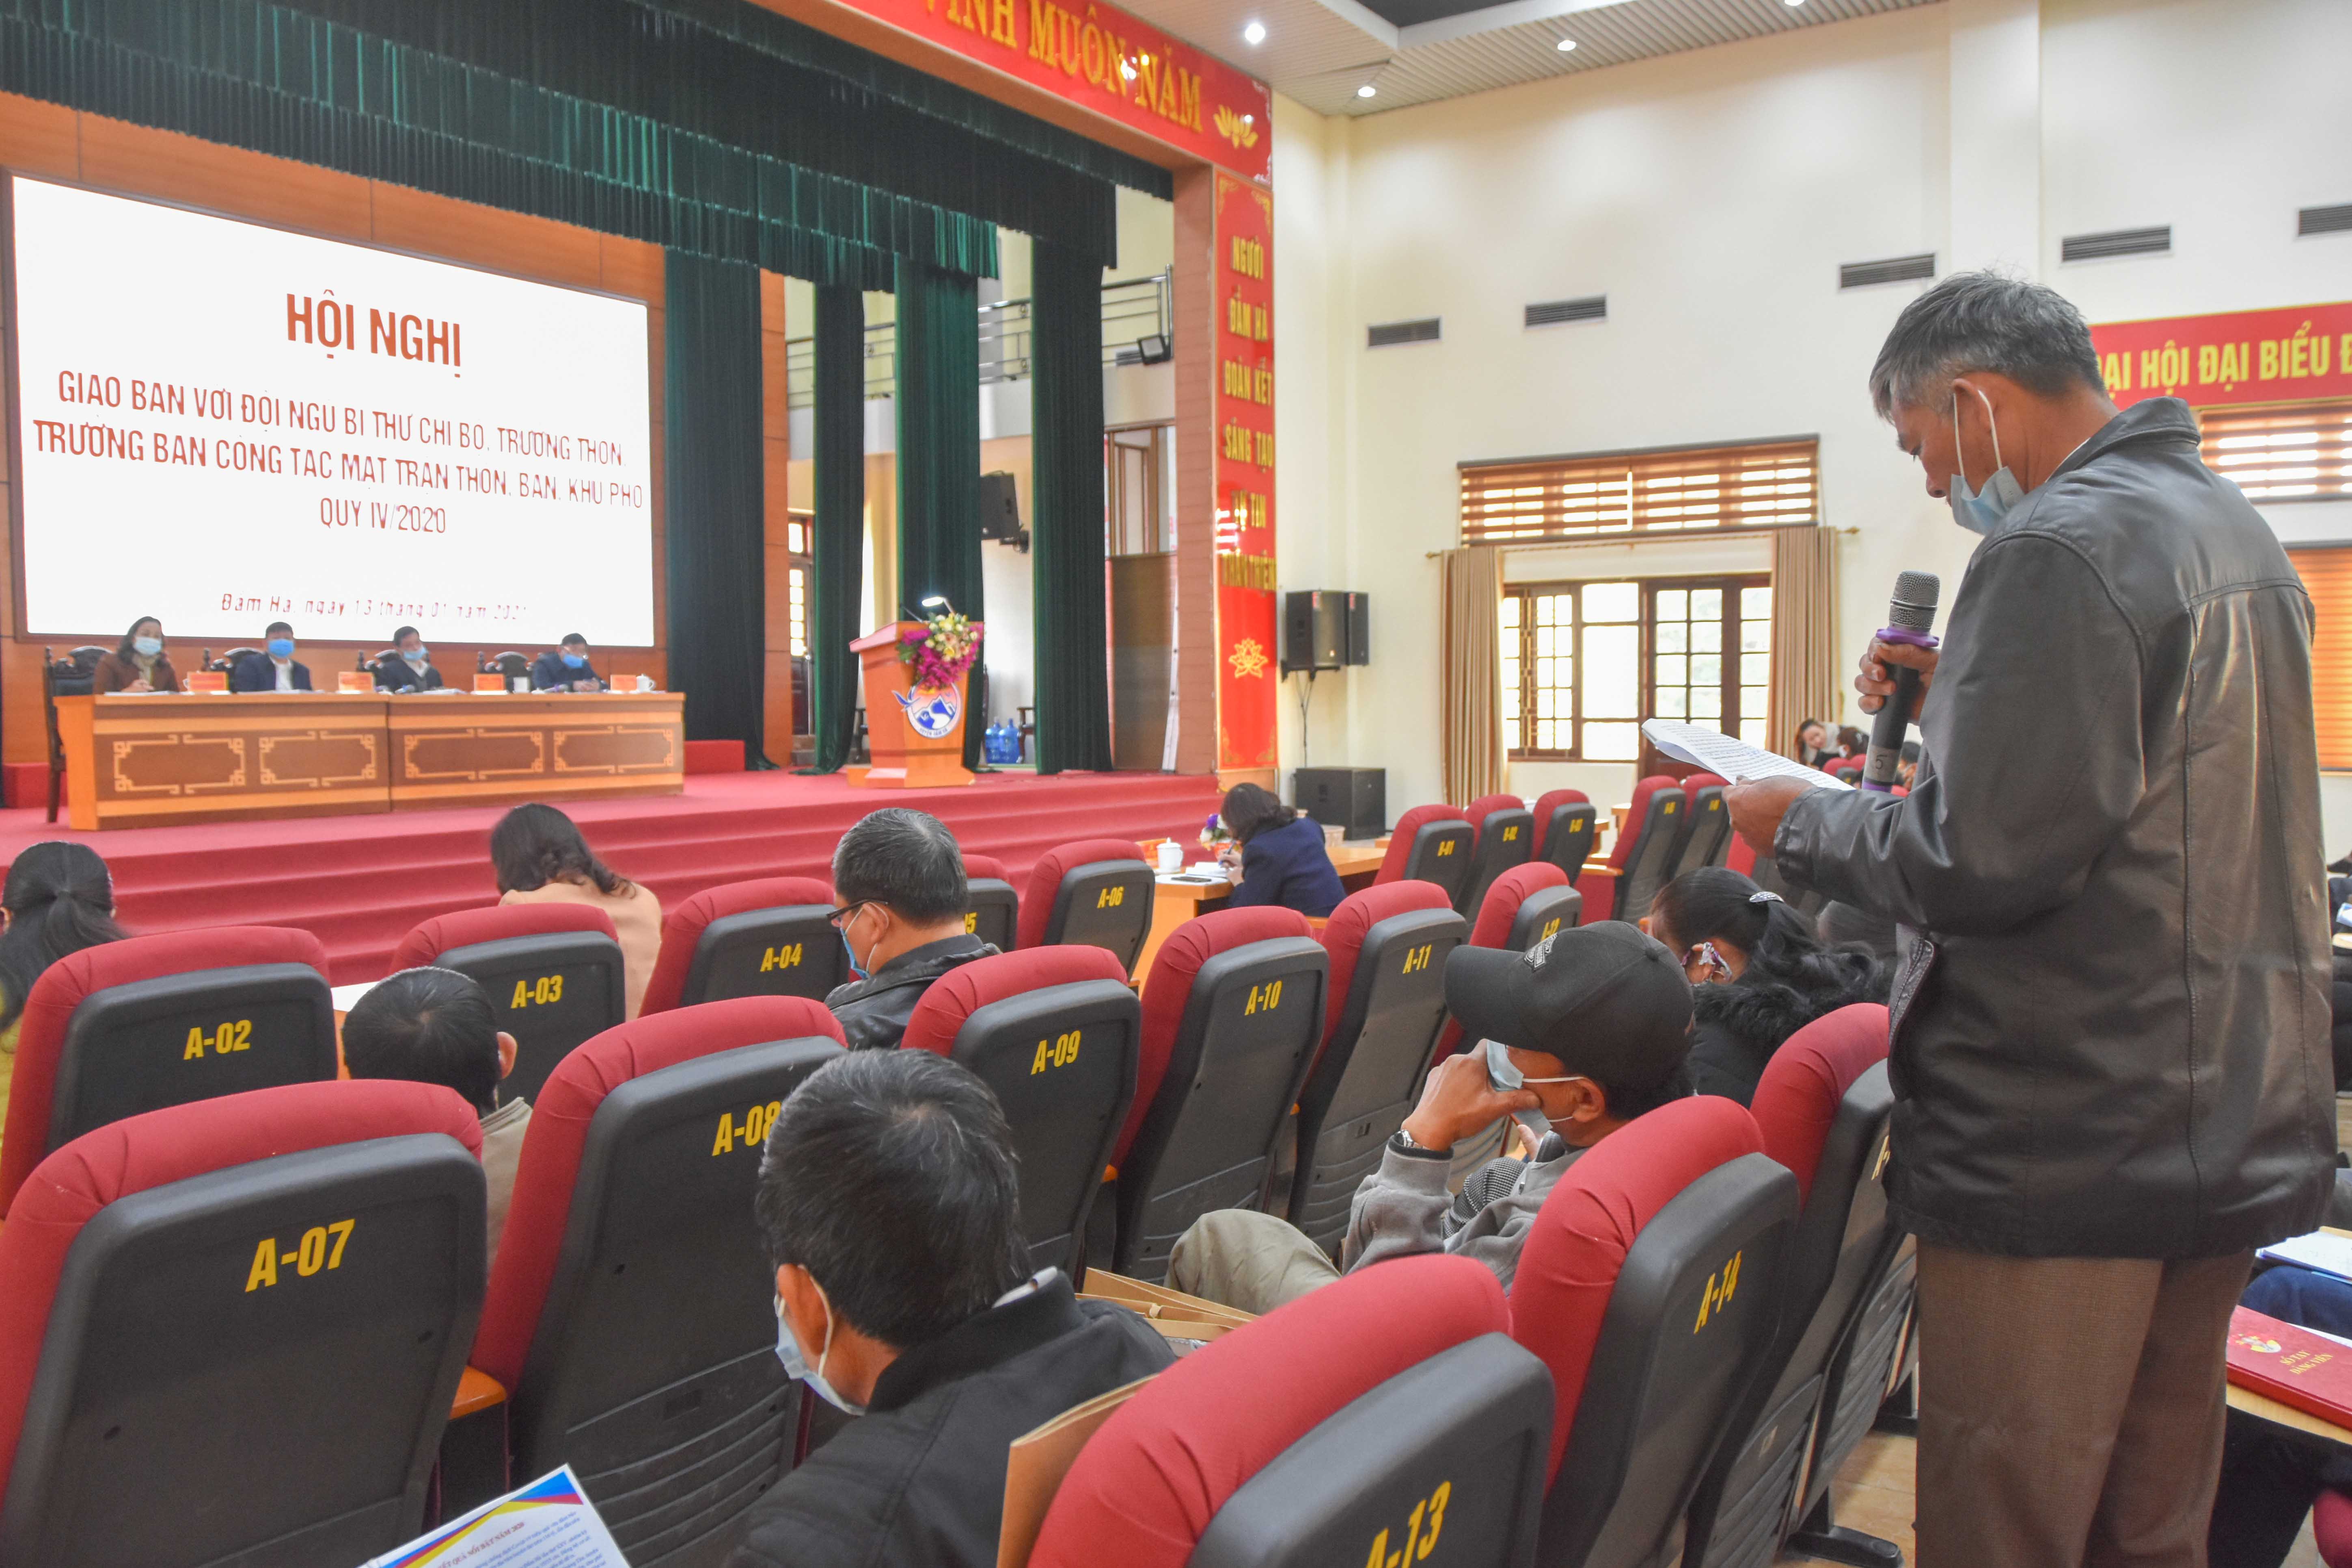 Thường trực Huyện ủy Đầm Hà tổ chức Hội nghị giao ban với đội ngũ Bí thư chi bộ, Trưởng thôn, Trưởng ban công tác mặt trận thôn, bản, khu phố về nhiệm vụ năm 2021.